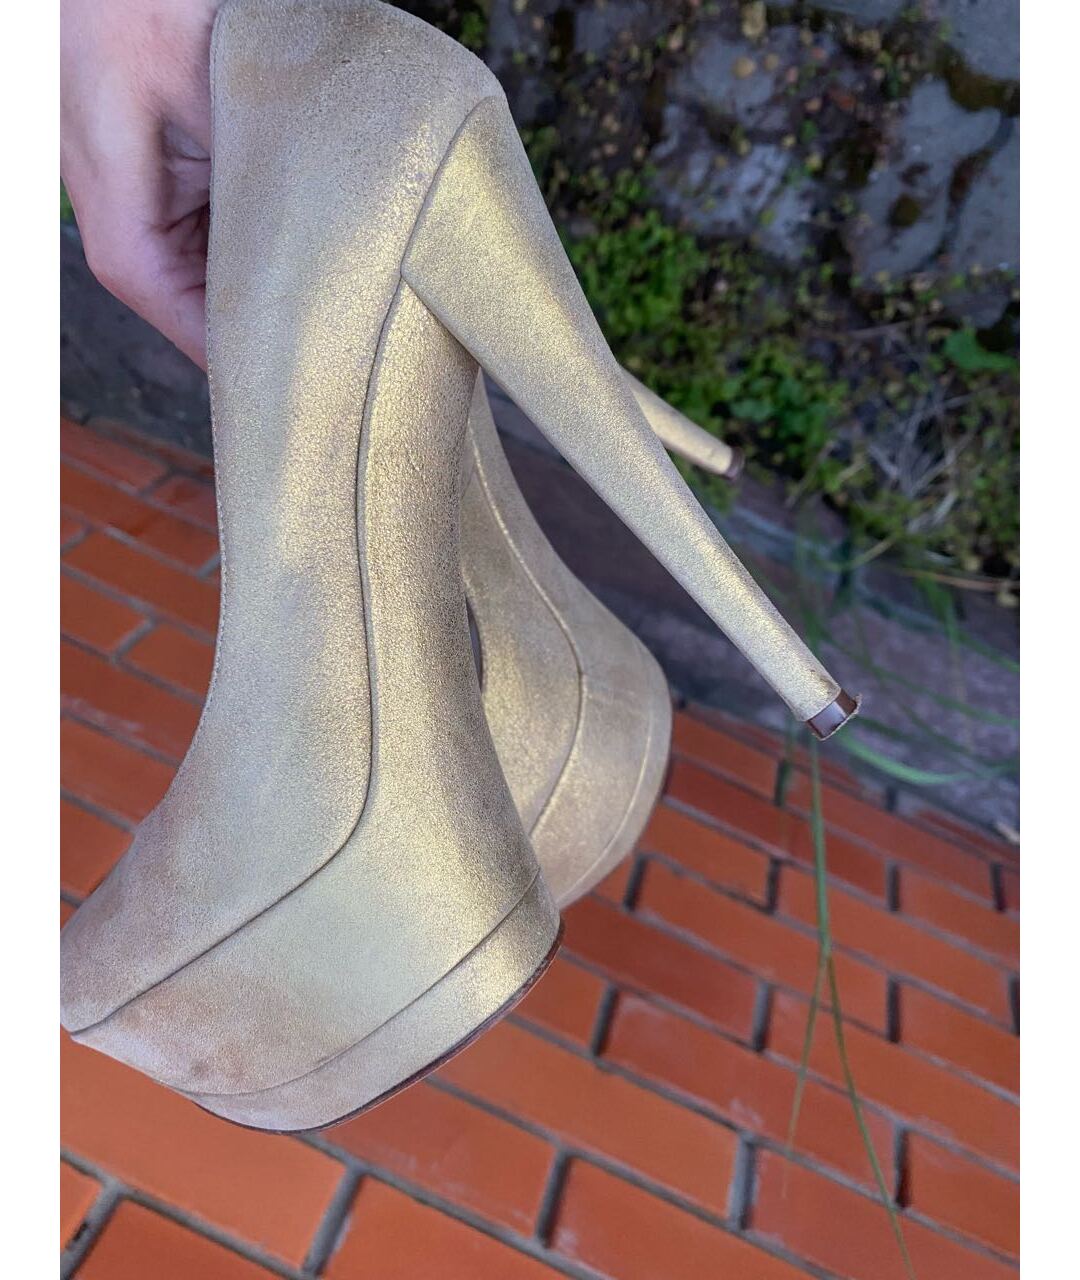 CASADEI Золотые кожаные туфли, фото 2